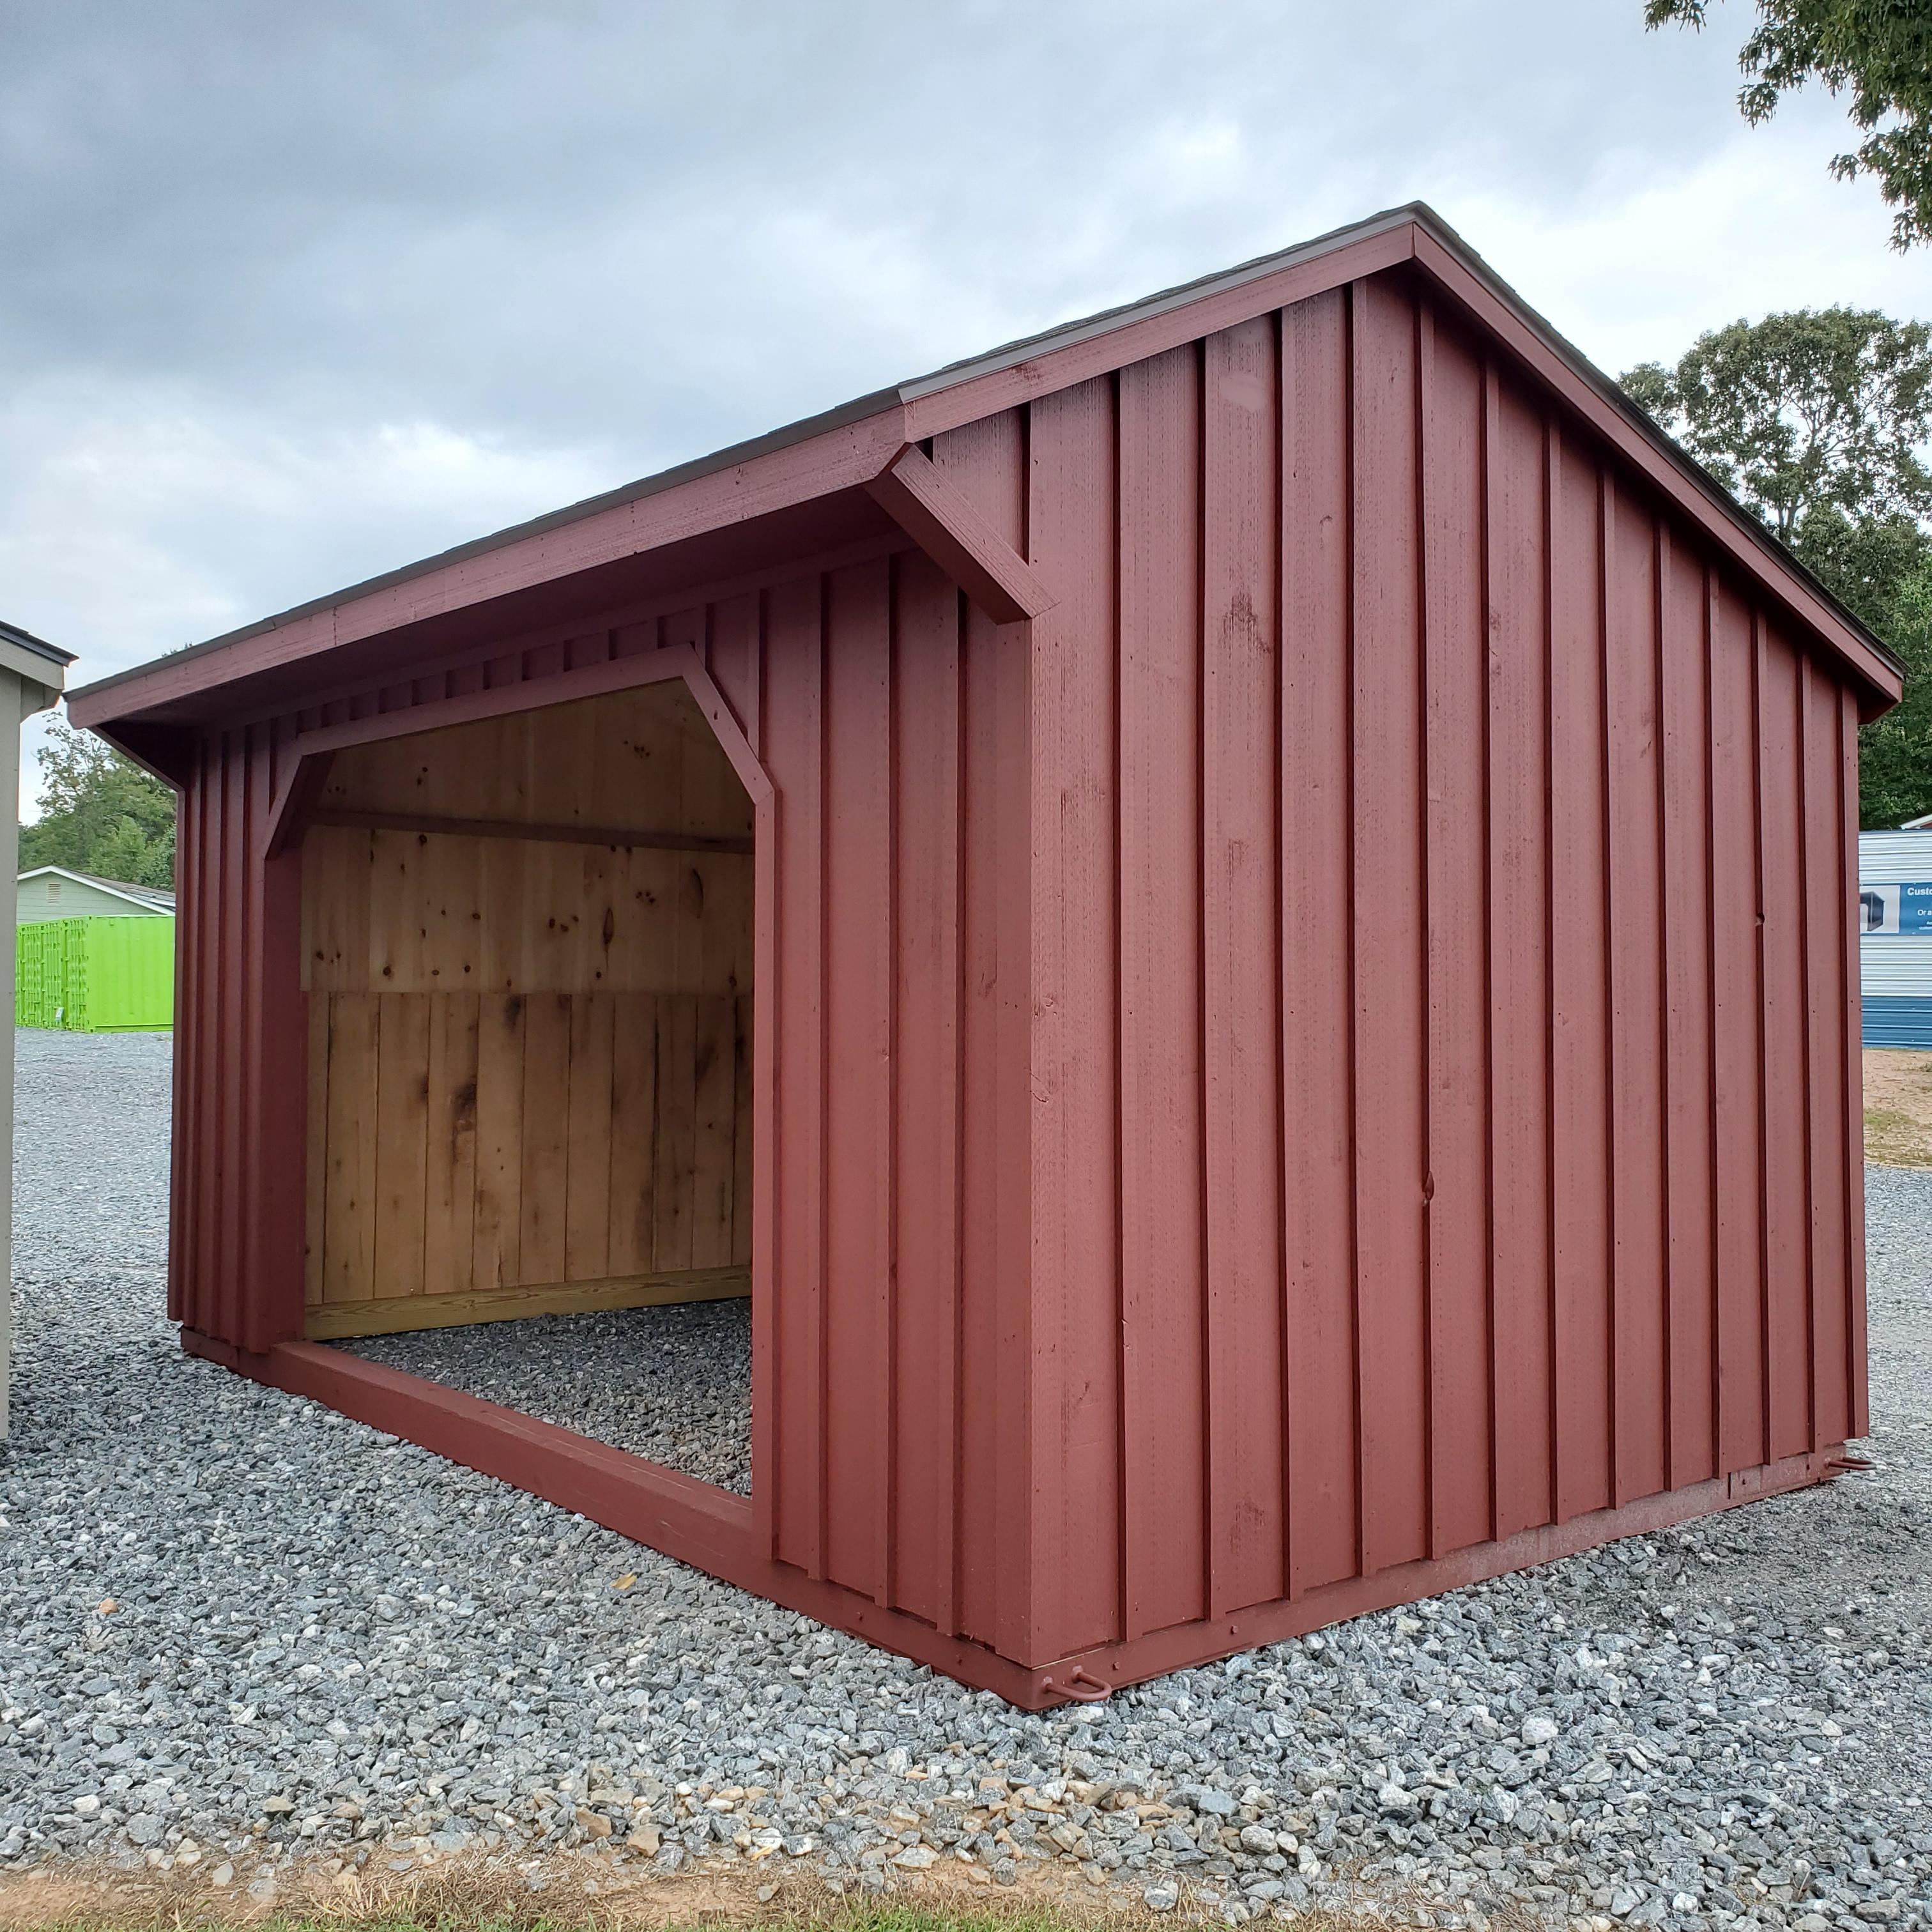 Modular barns and Run-in sheds